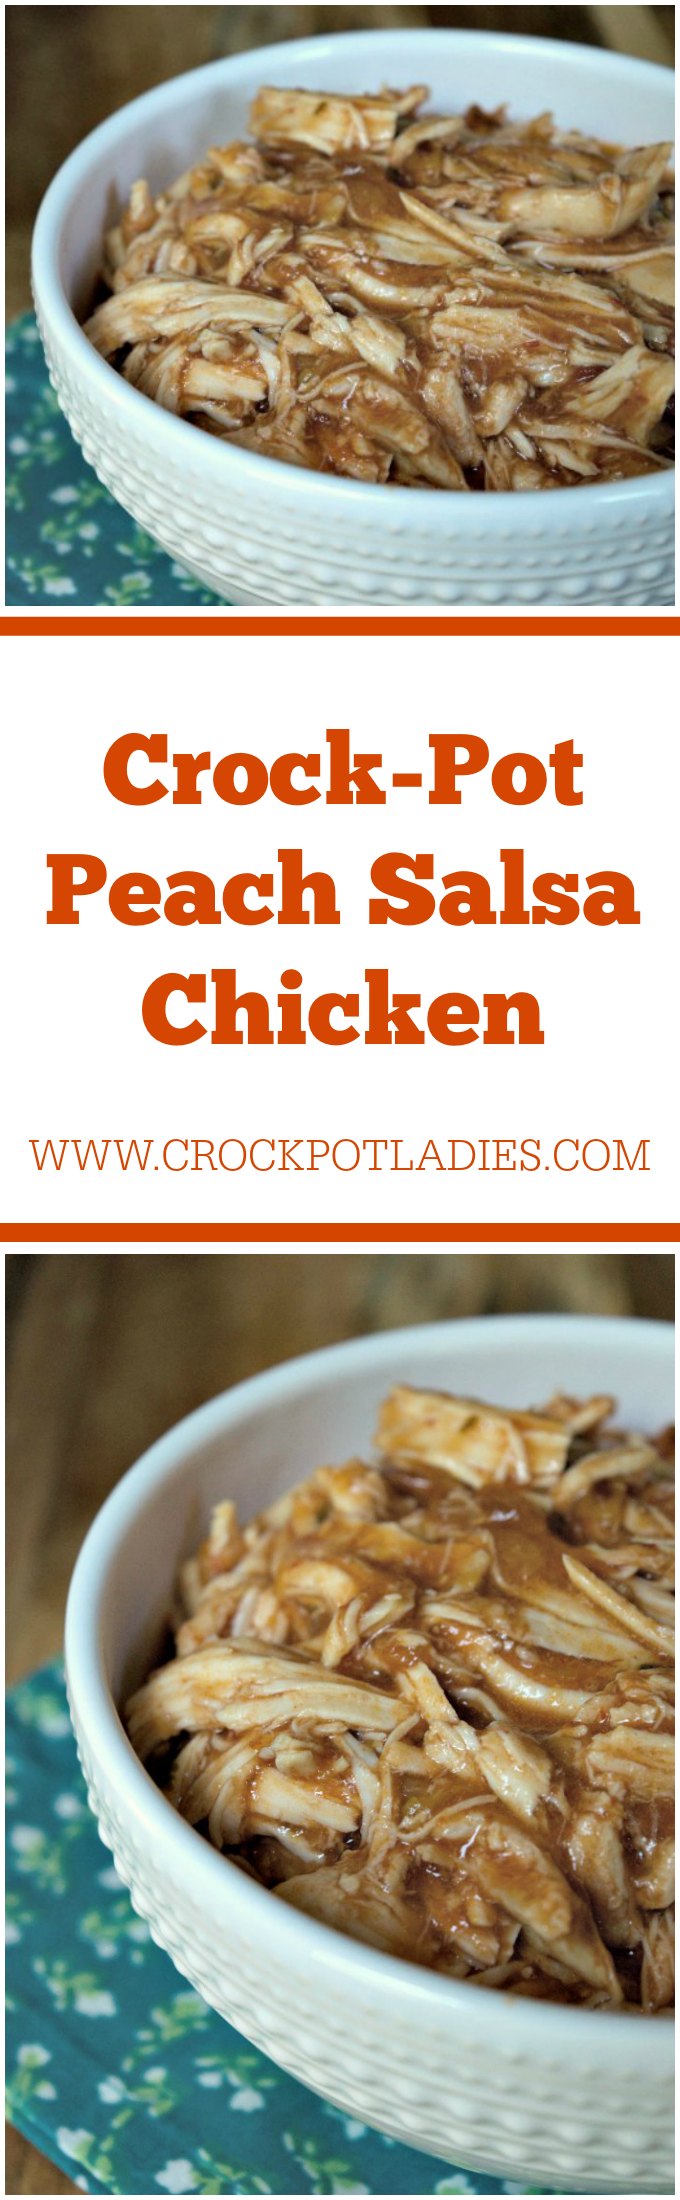 Crock-Pot Peach Salsa Chicken